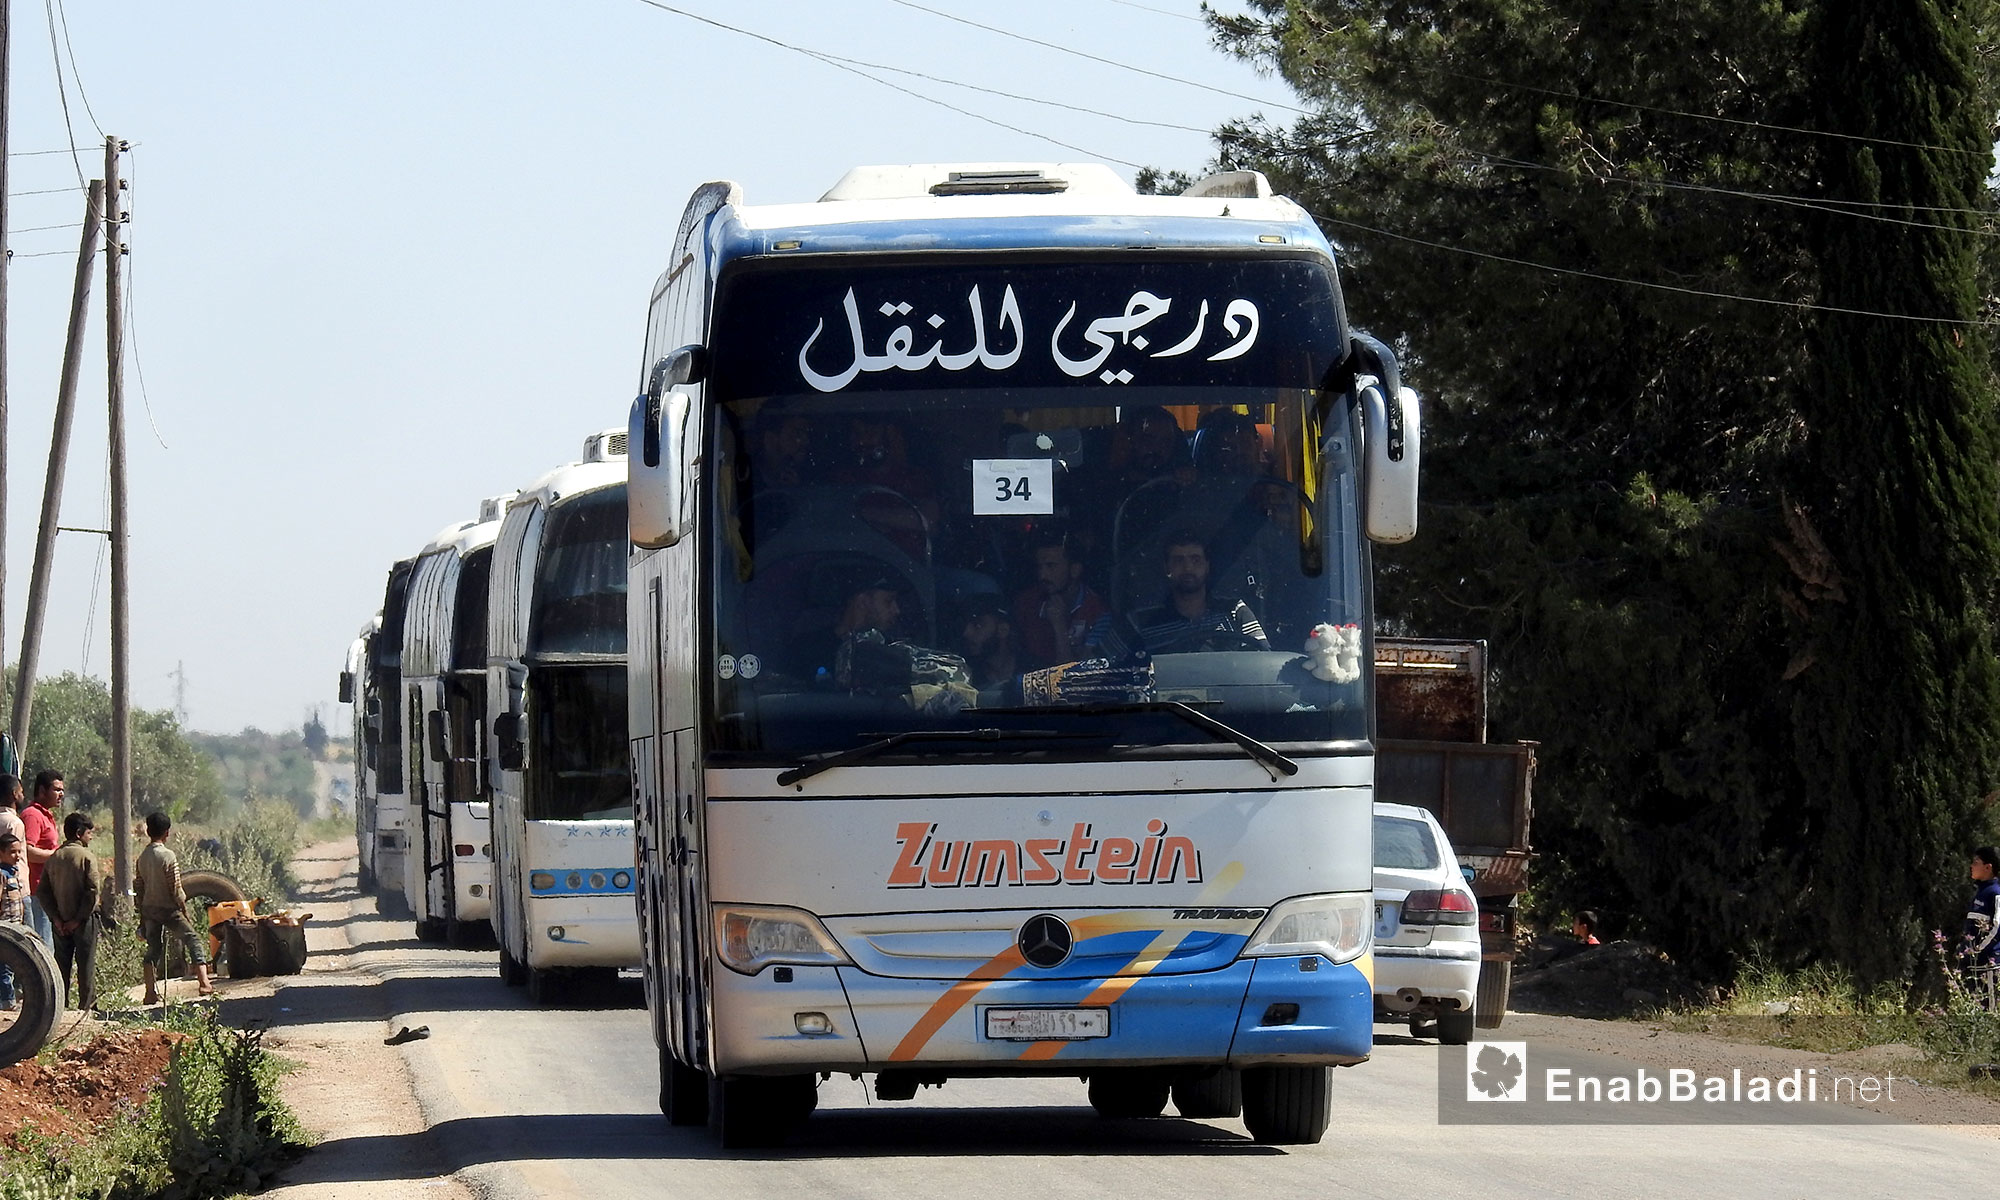 قافلة الدفعة التاسعة من أهالي الوعر على اتستراد الباب-الراعي باتجاه جرابلس - 11 أيار 2017 (عنب بلدي)